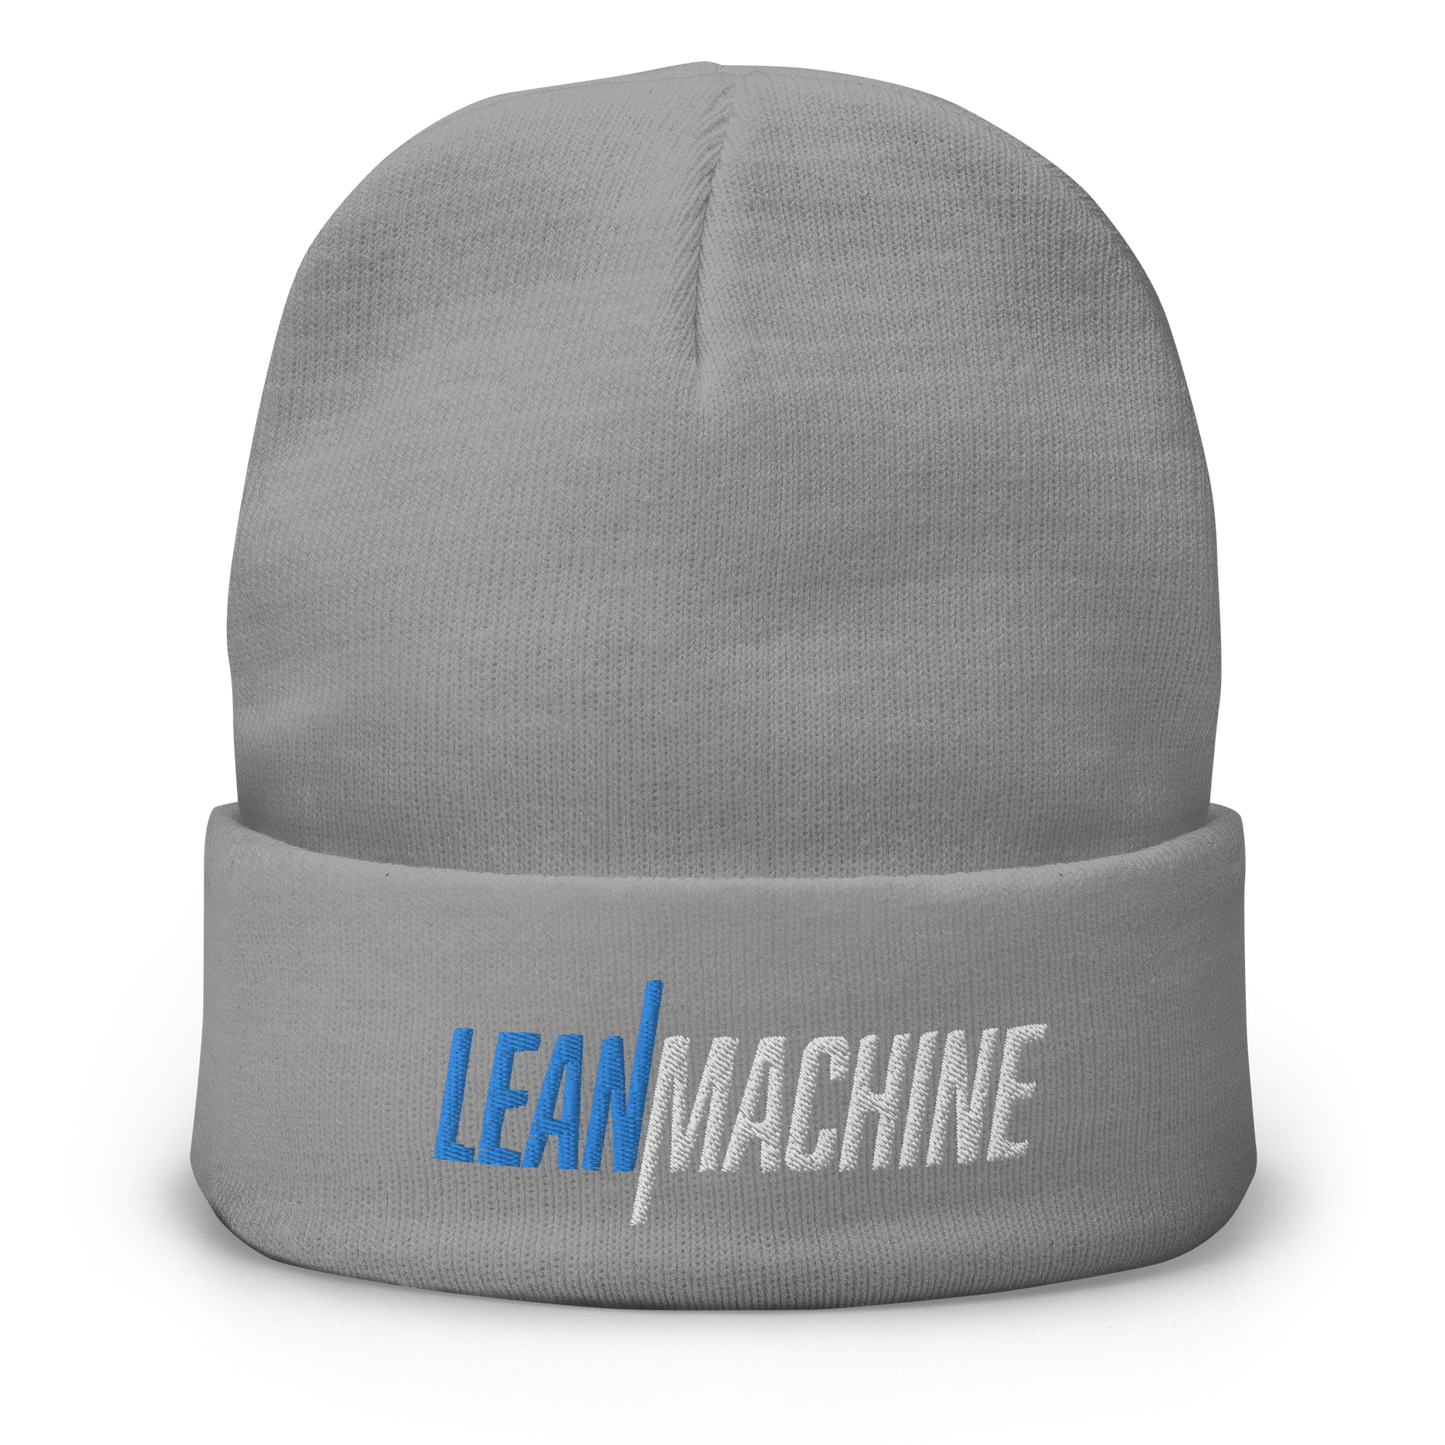 Lean Machine Embroidered Beanie